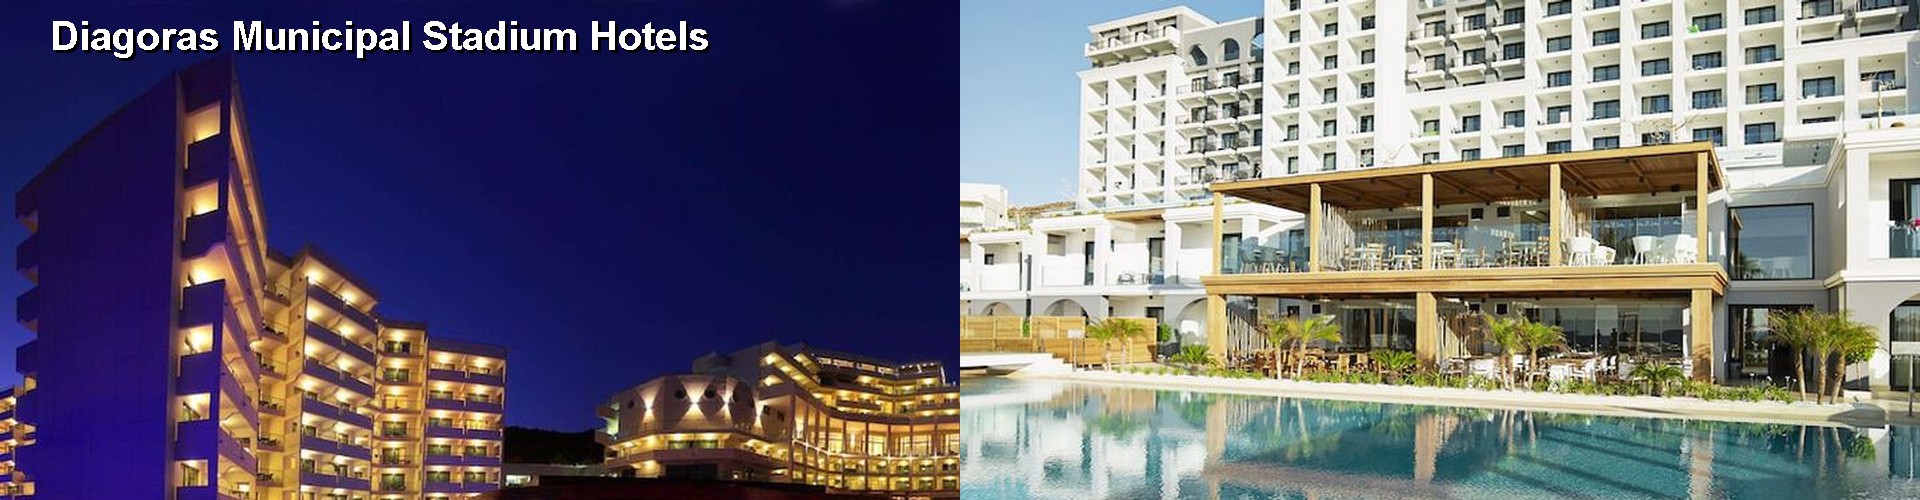 5 Best Hotels near Diagoras Municipal Stadium